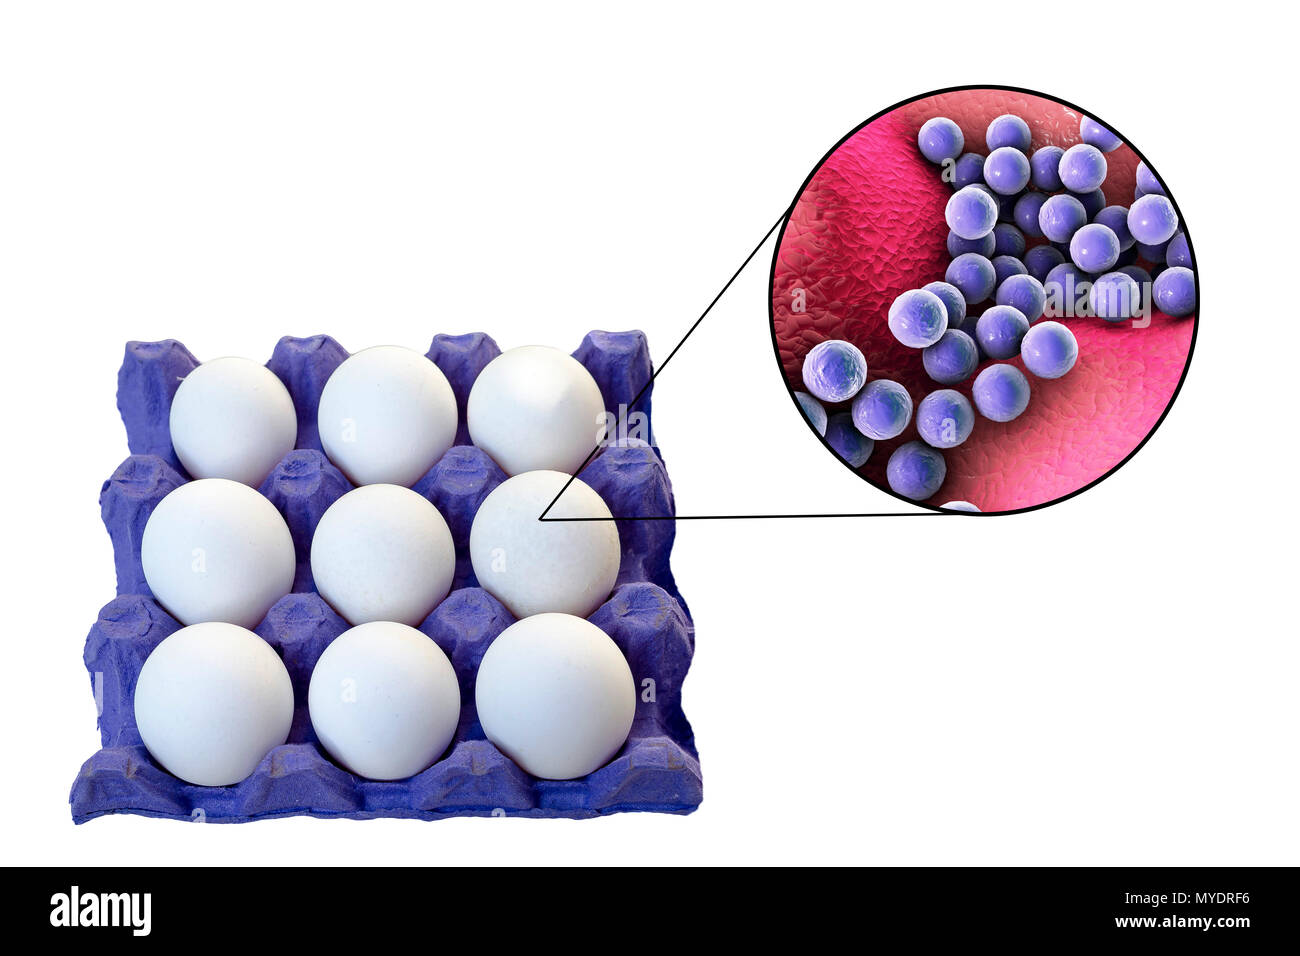 Los huevos de pollo como fuente de intoxicación alimentaria por estafilococos, Ilustración conceptual. Foto de stock